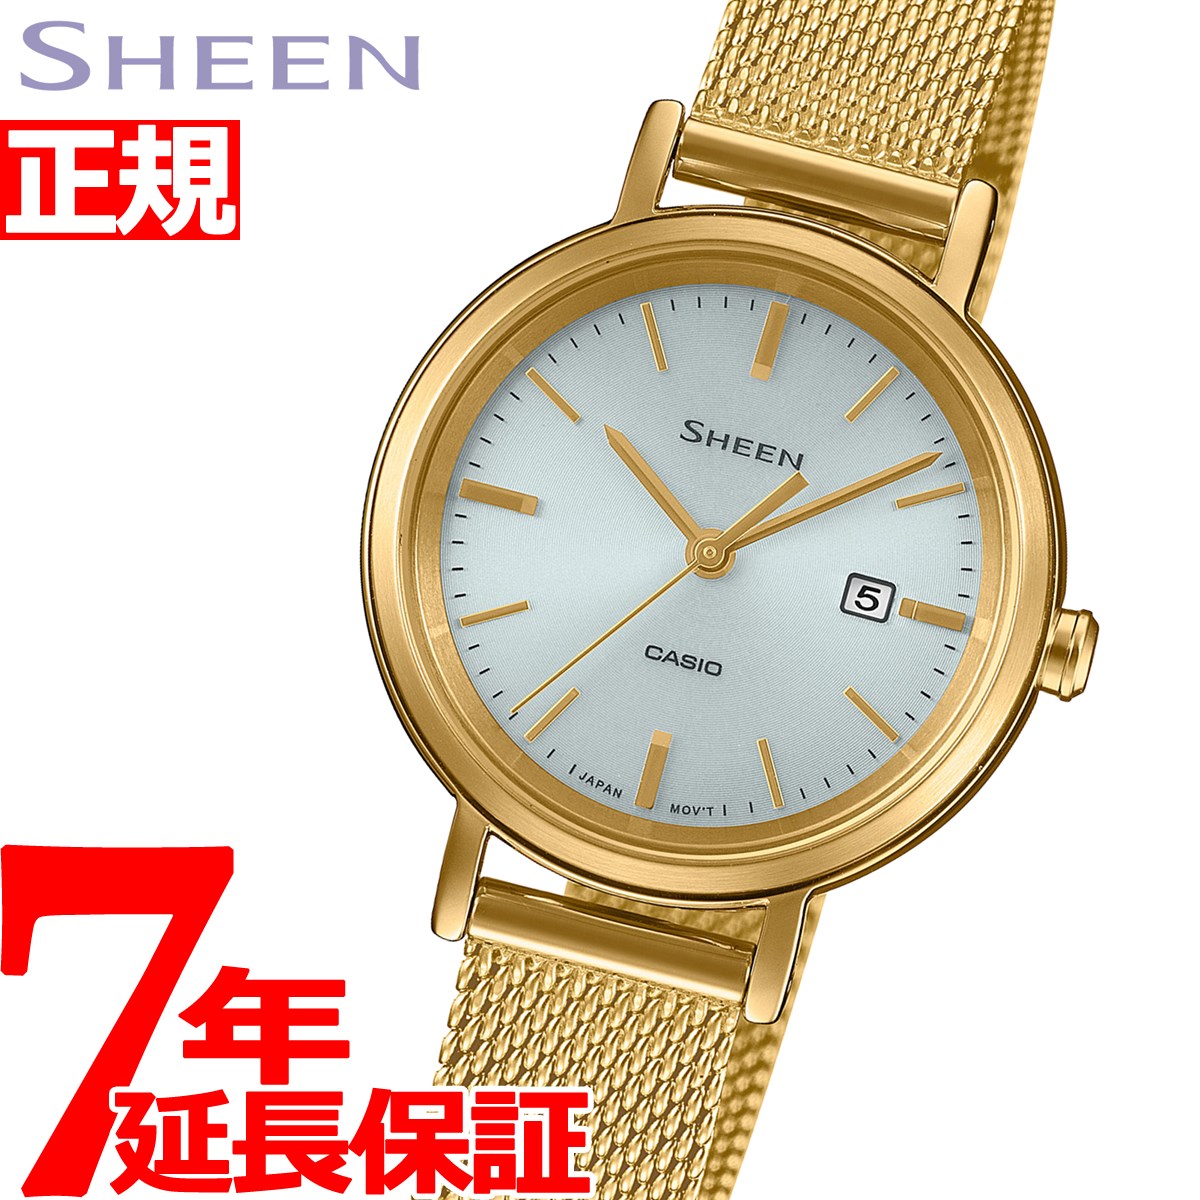 カシオ シーン CASIO SHEEN ソーラー 腕時計 レディース SHS-D300GM-7AJF